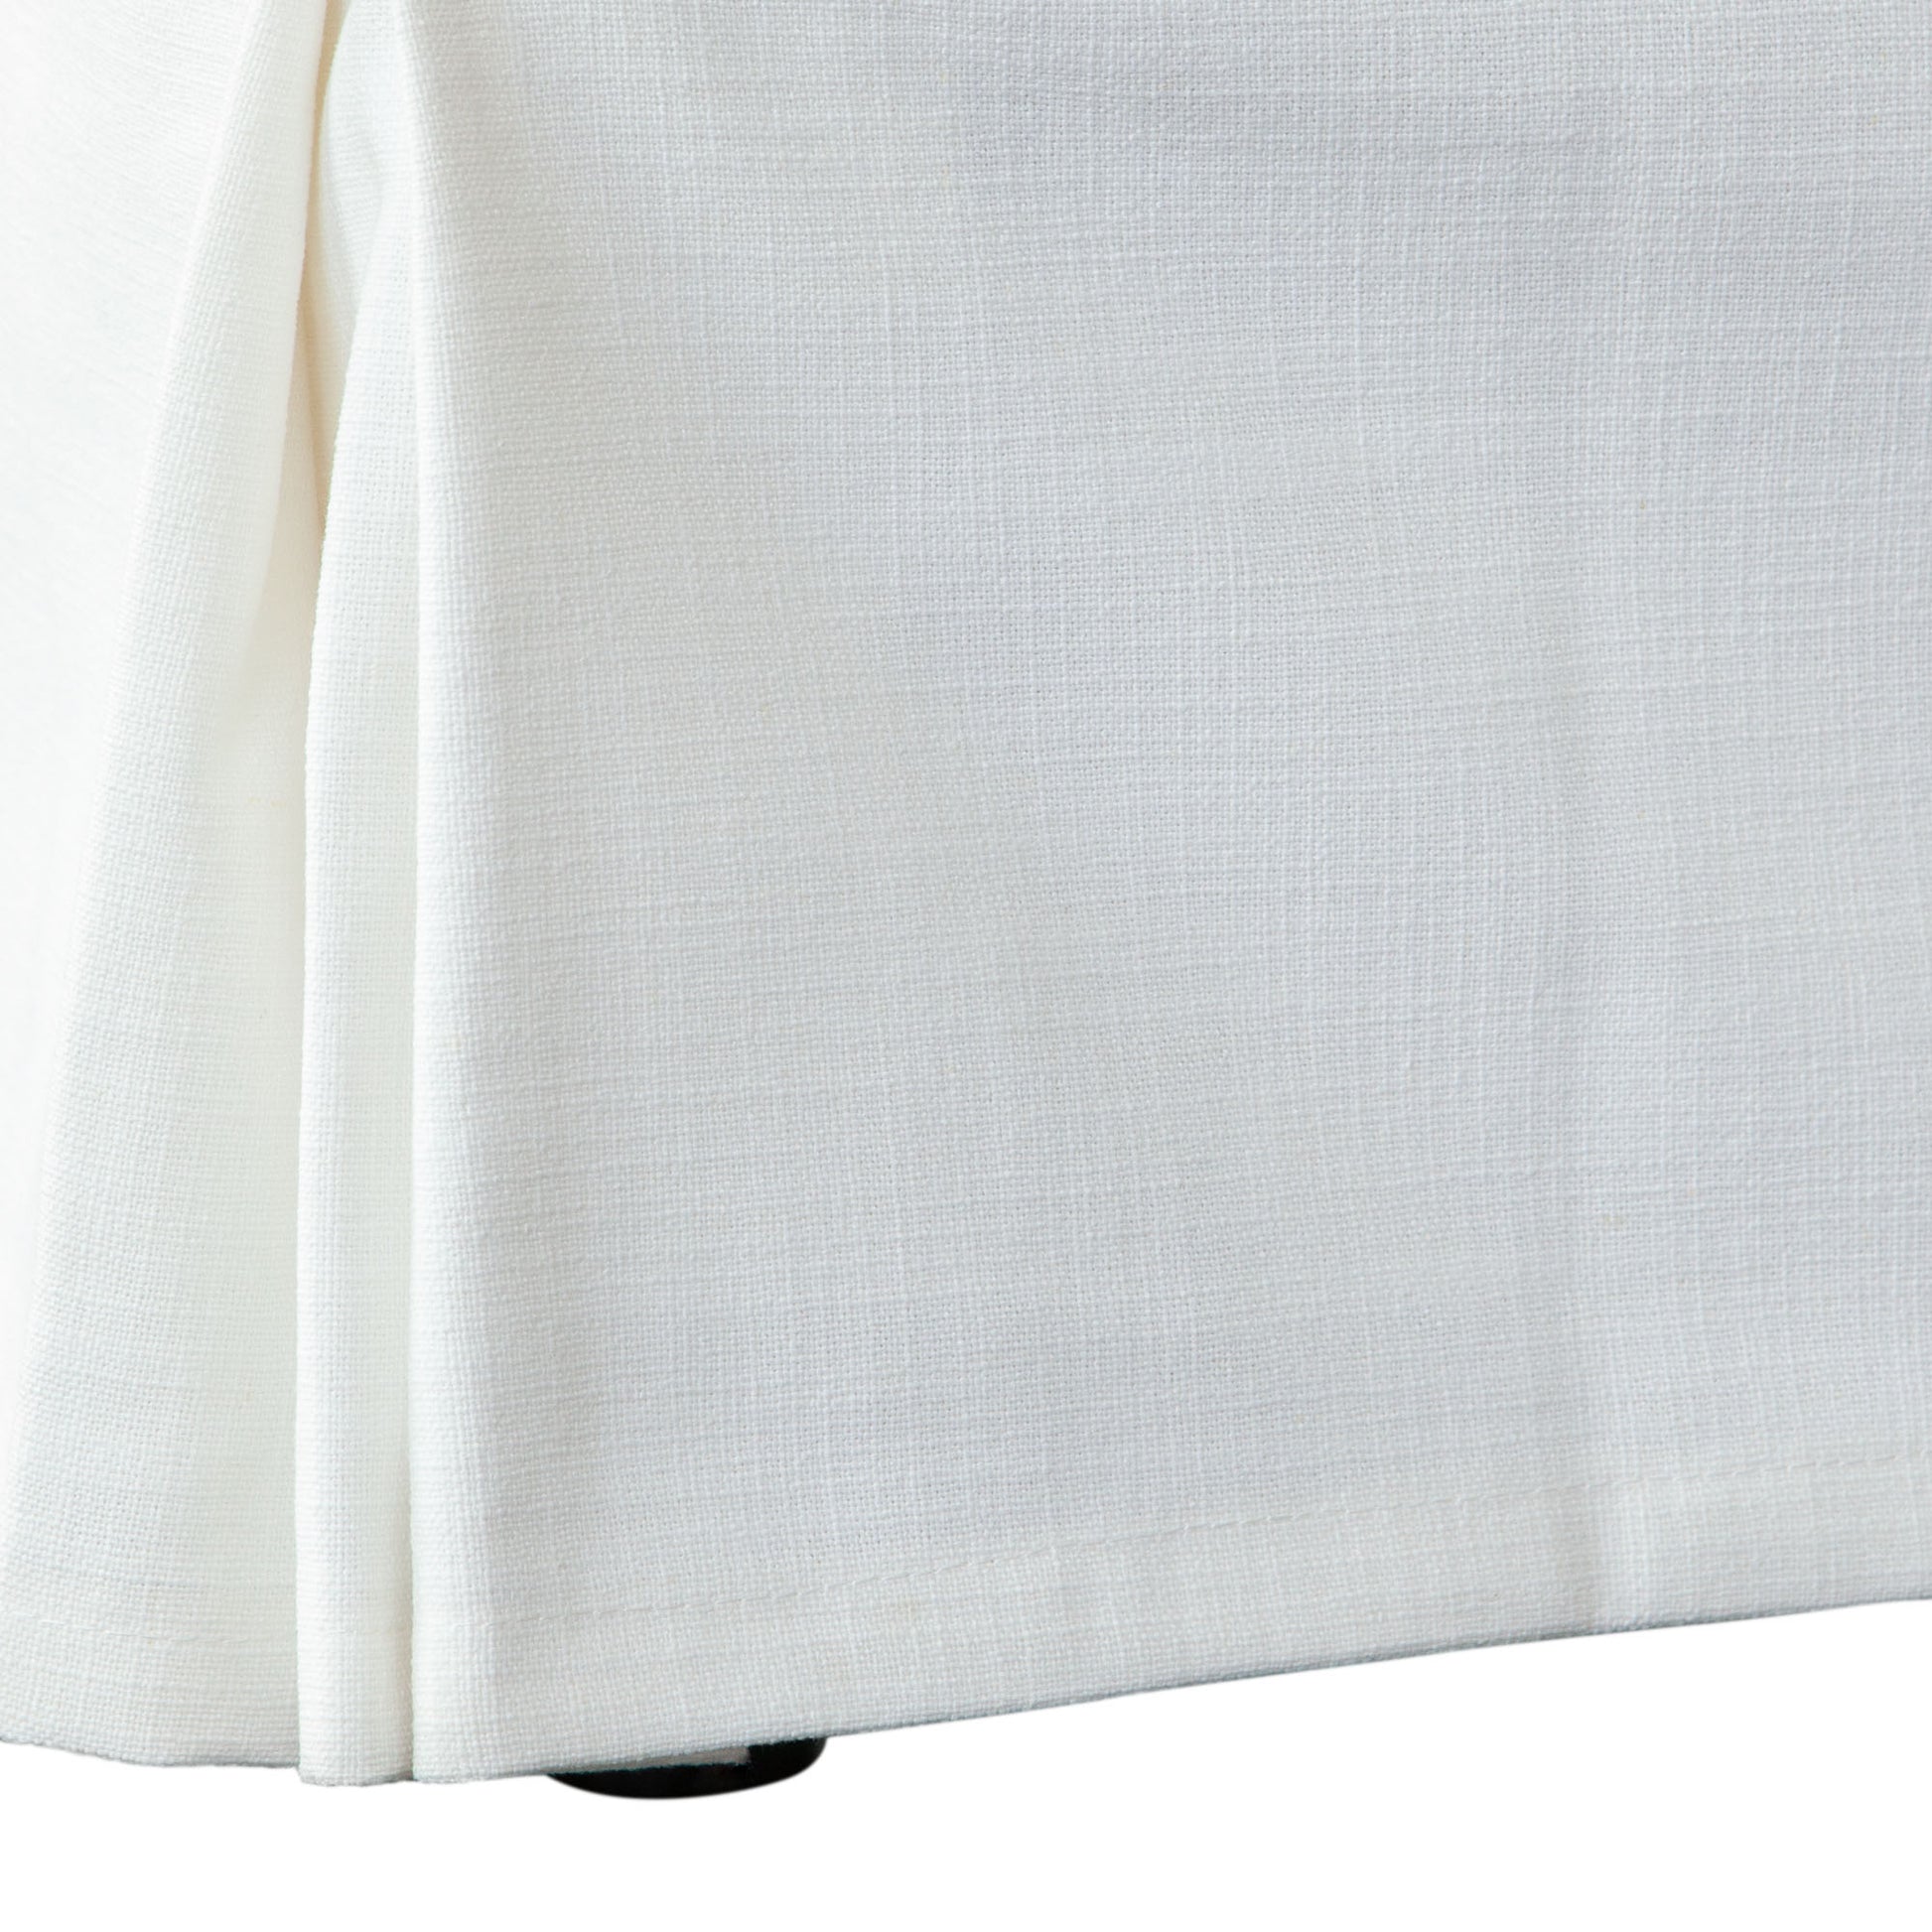 Savannah 58" Slipcover Bed in White Linen Fabric - Elite Maison